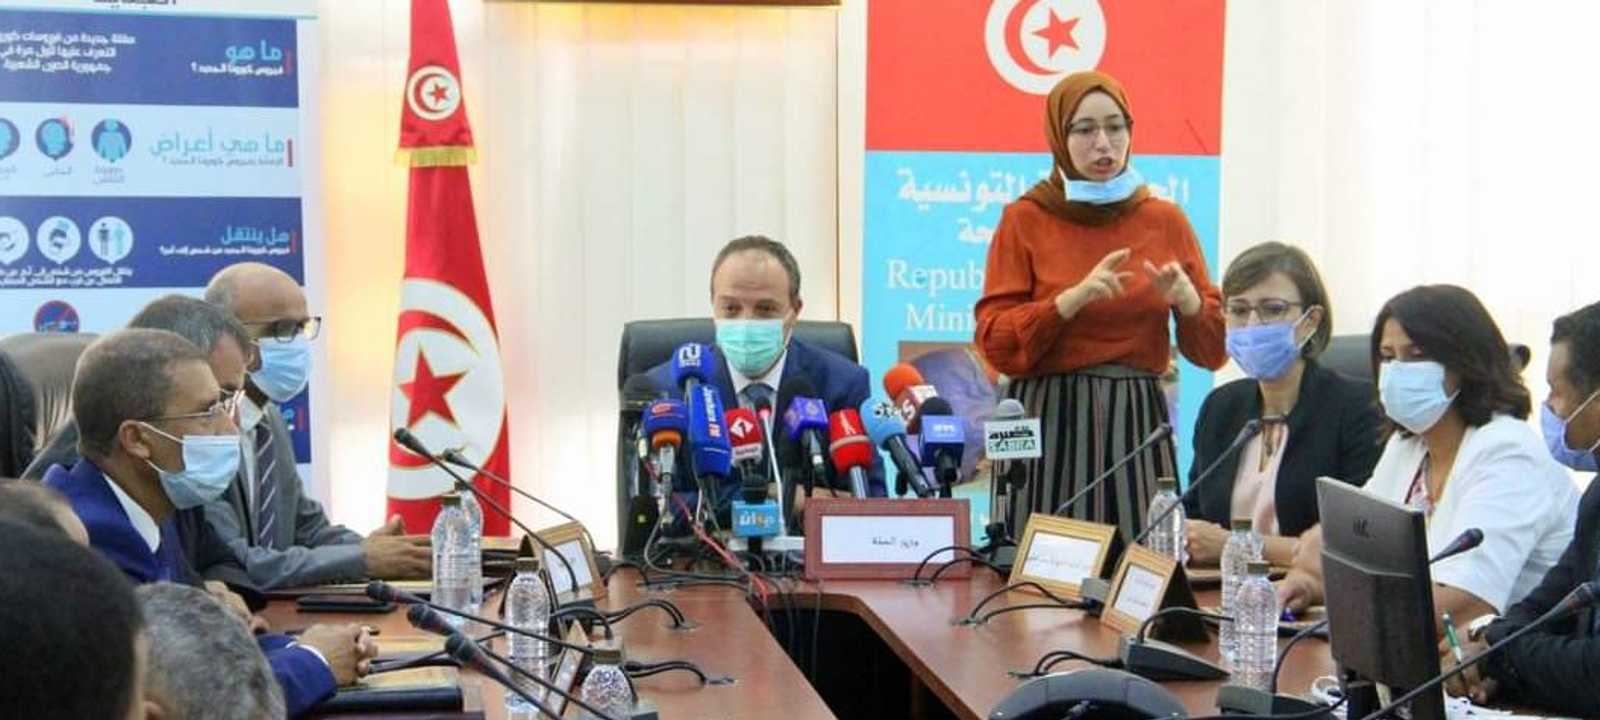 إقرار العودة إلى المدارس في تونس رغم خطر كورونا